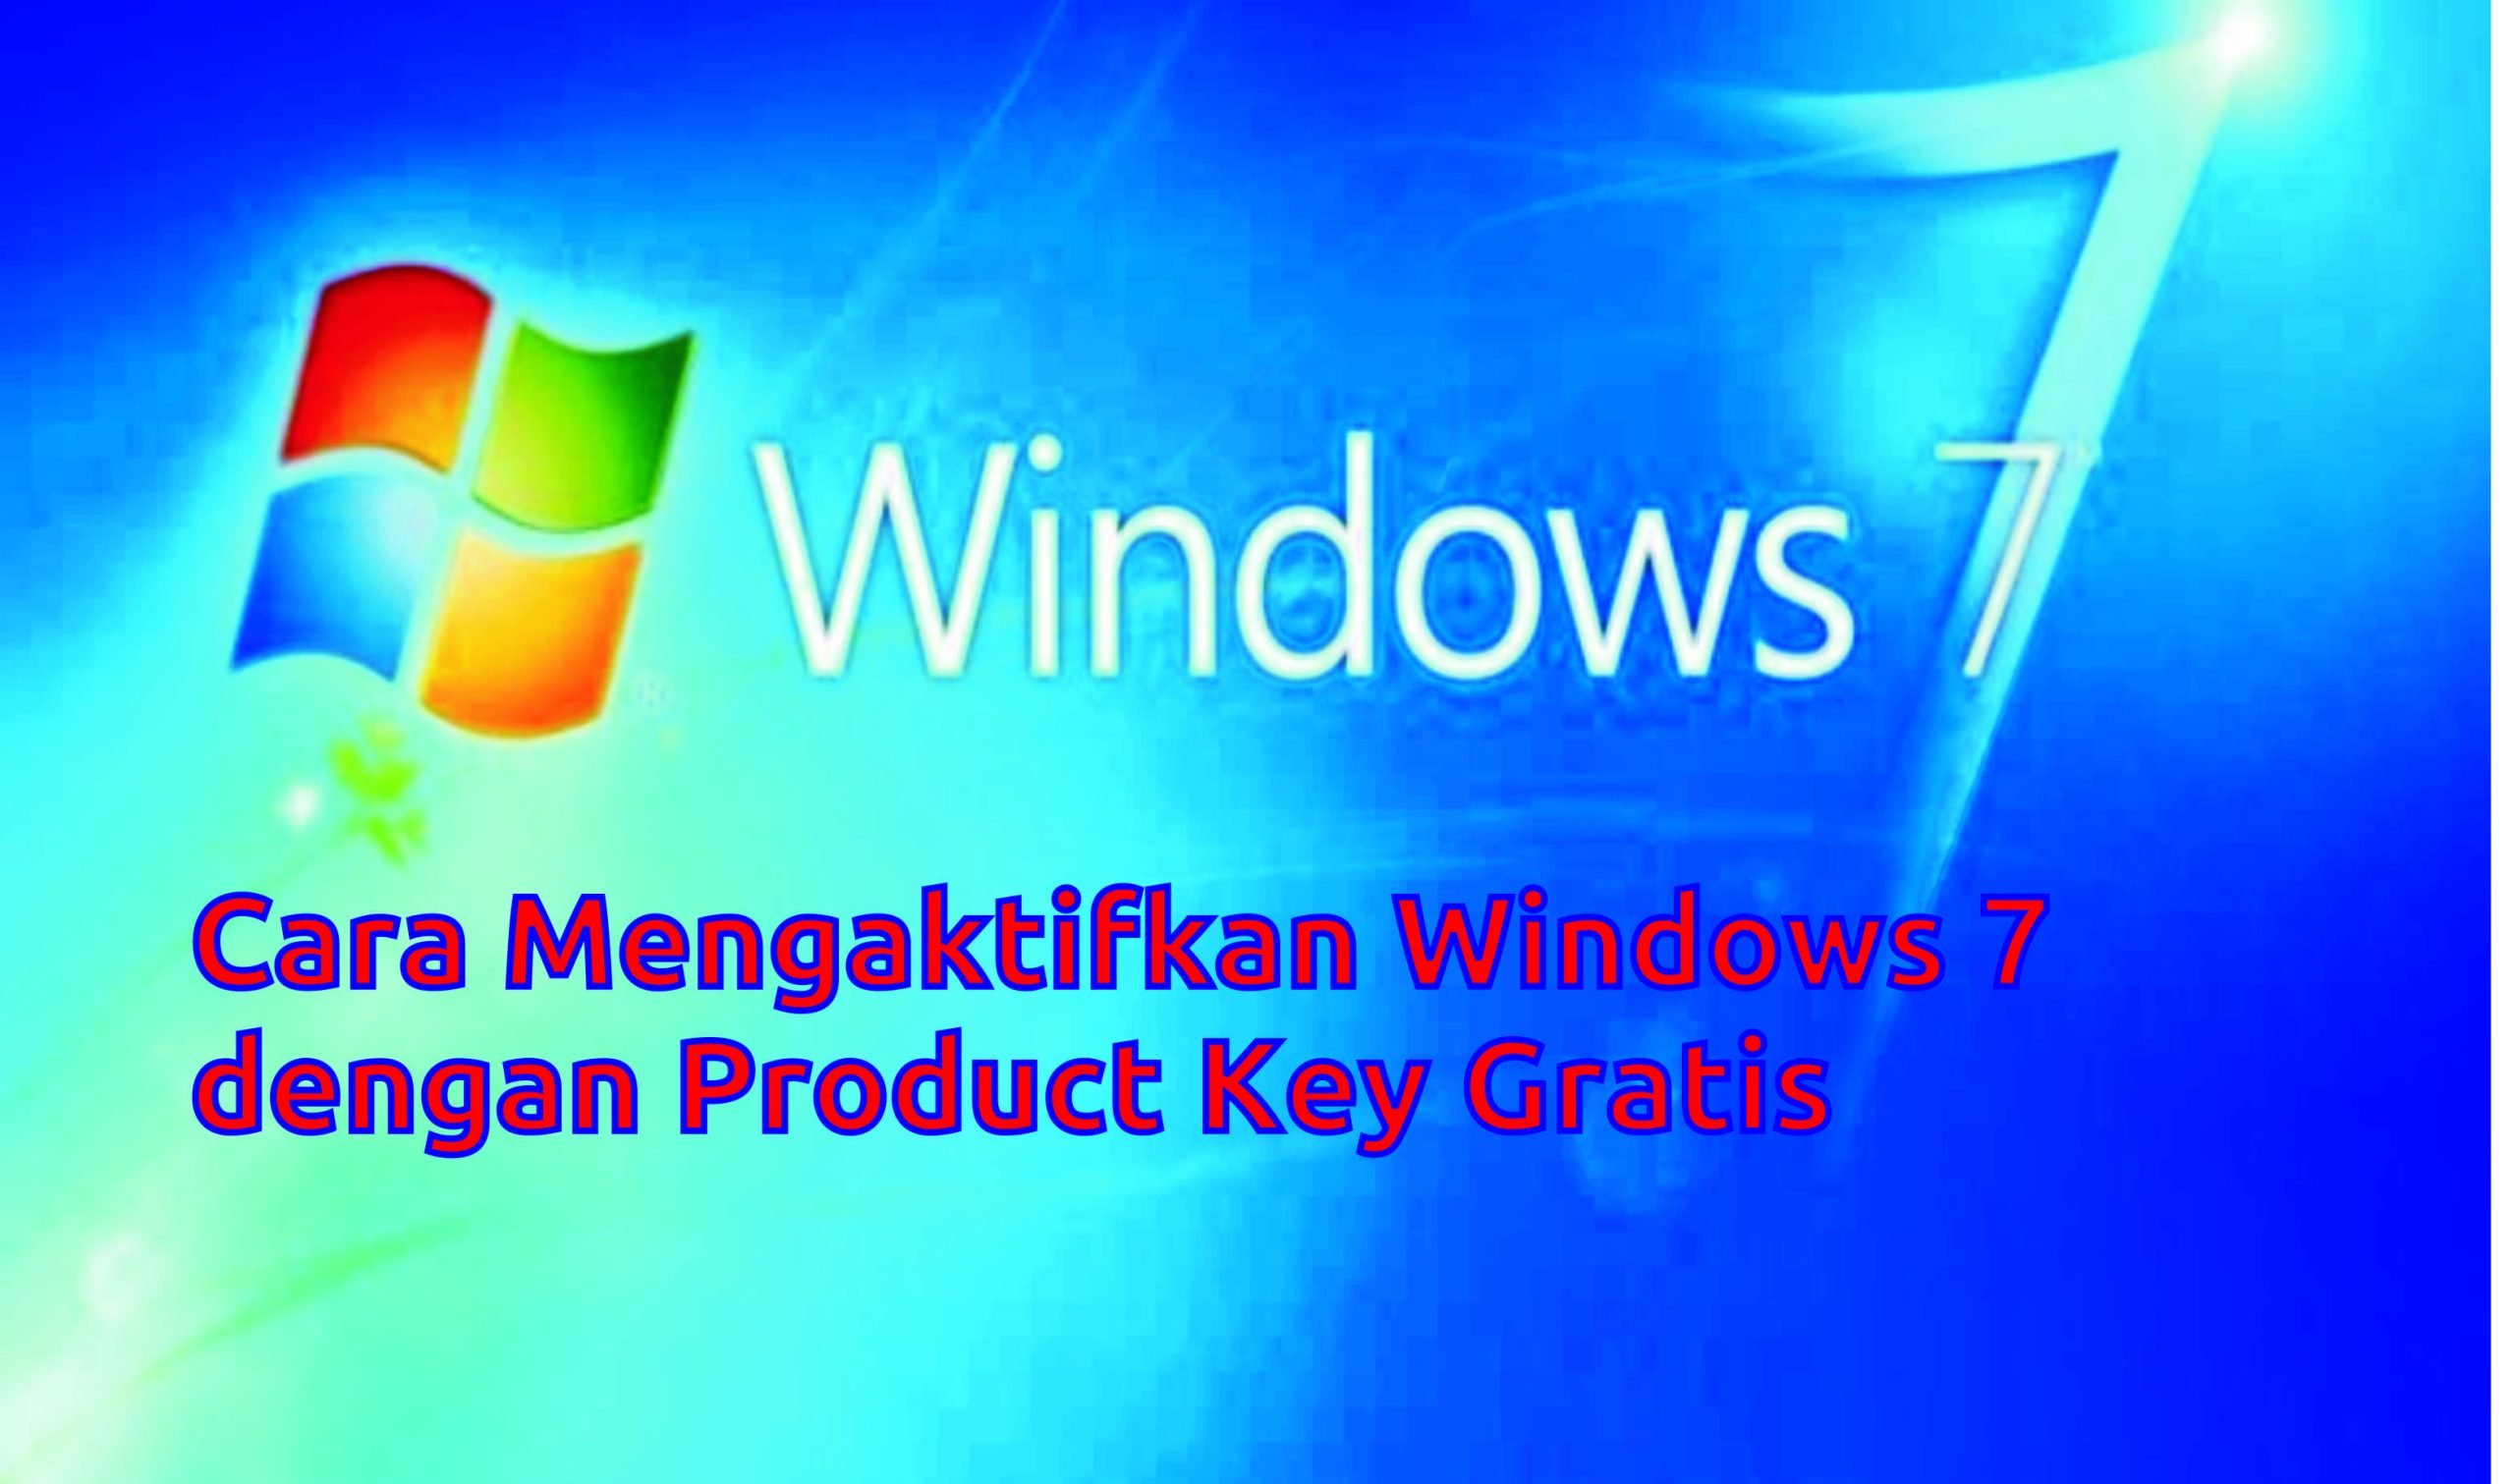 Mengaktifkan Windows 7 Dengan Product Key Gratis